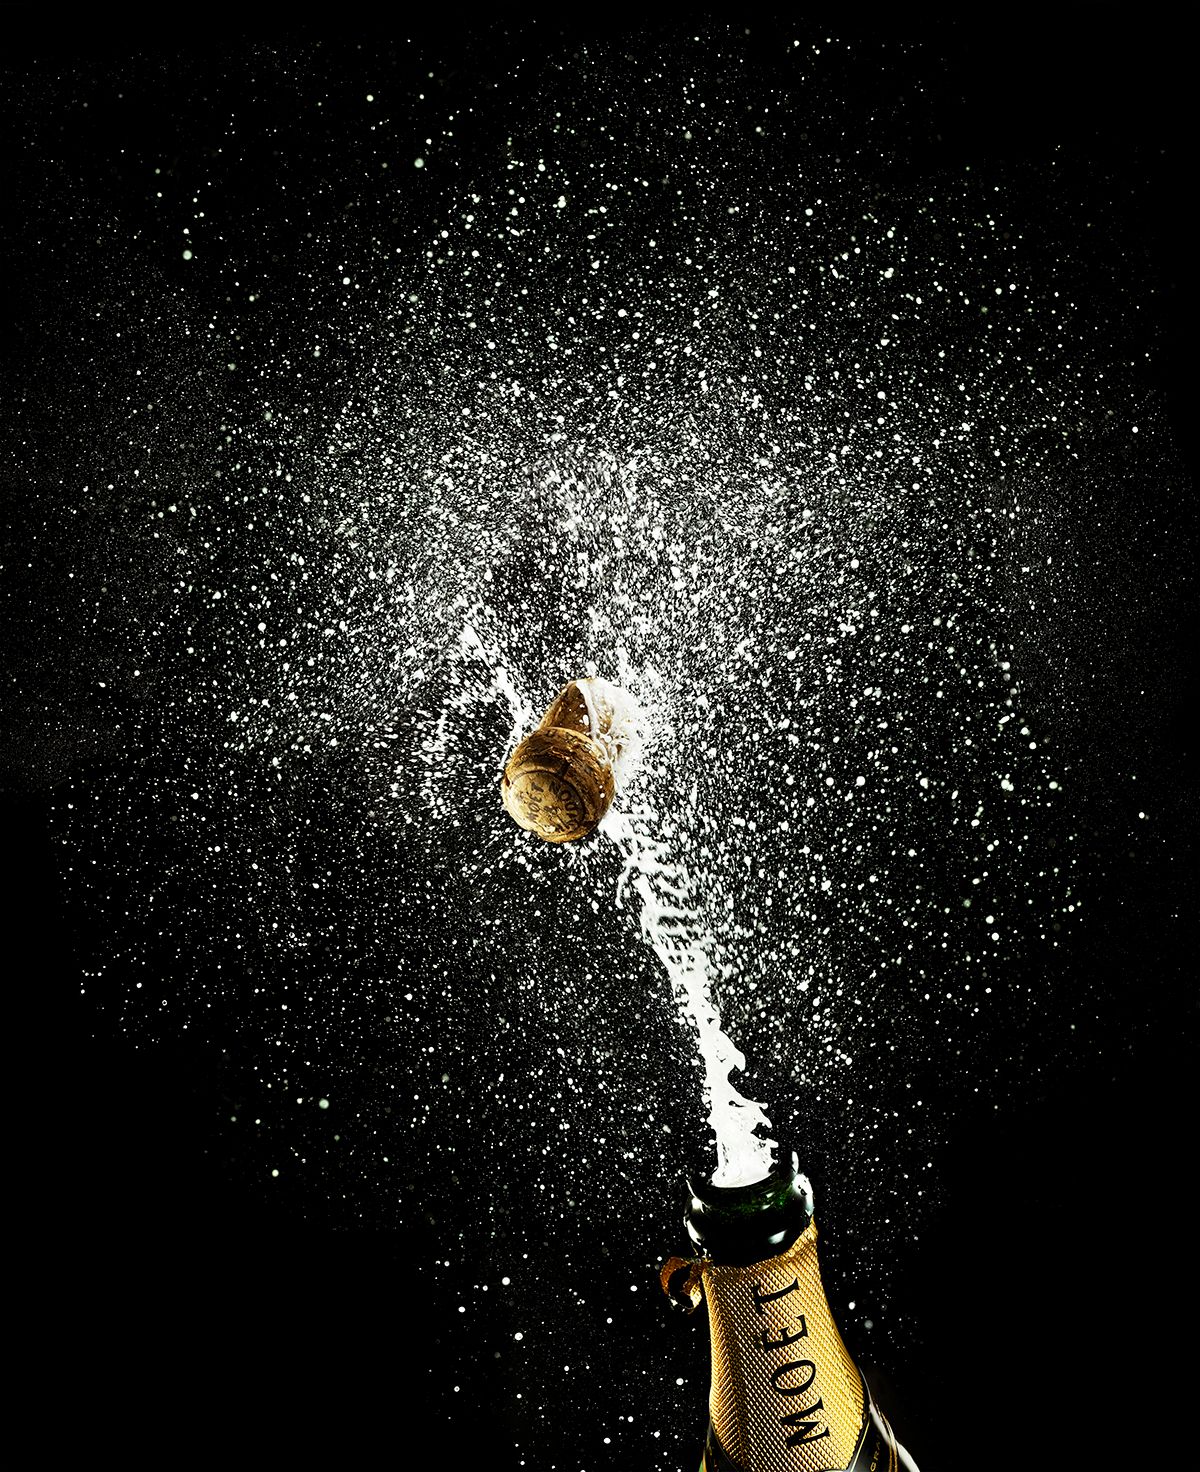 liquids_champagne.jpg